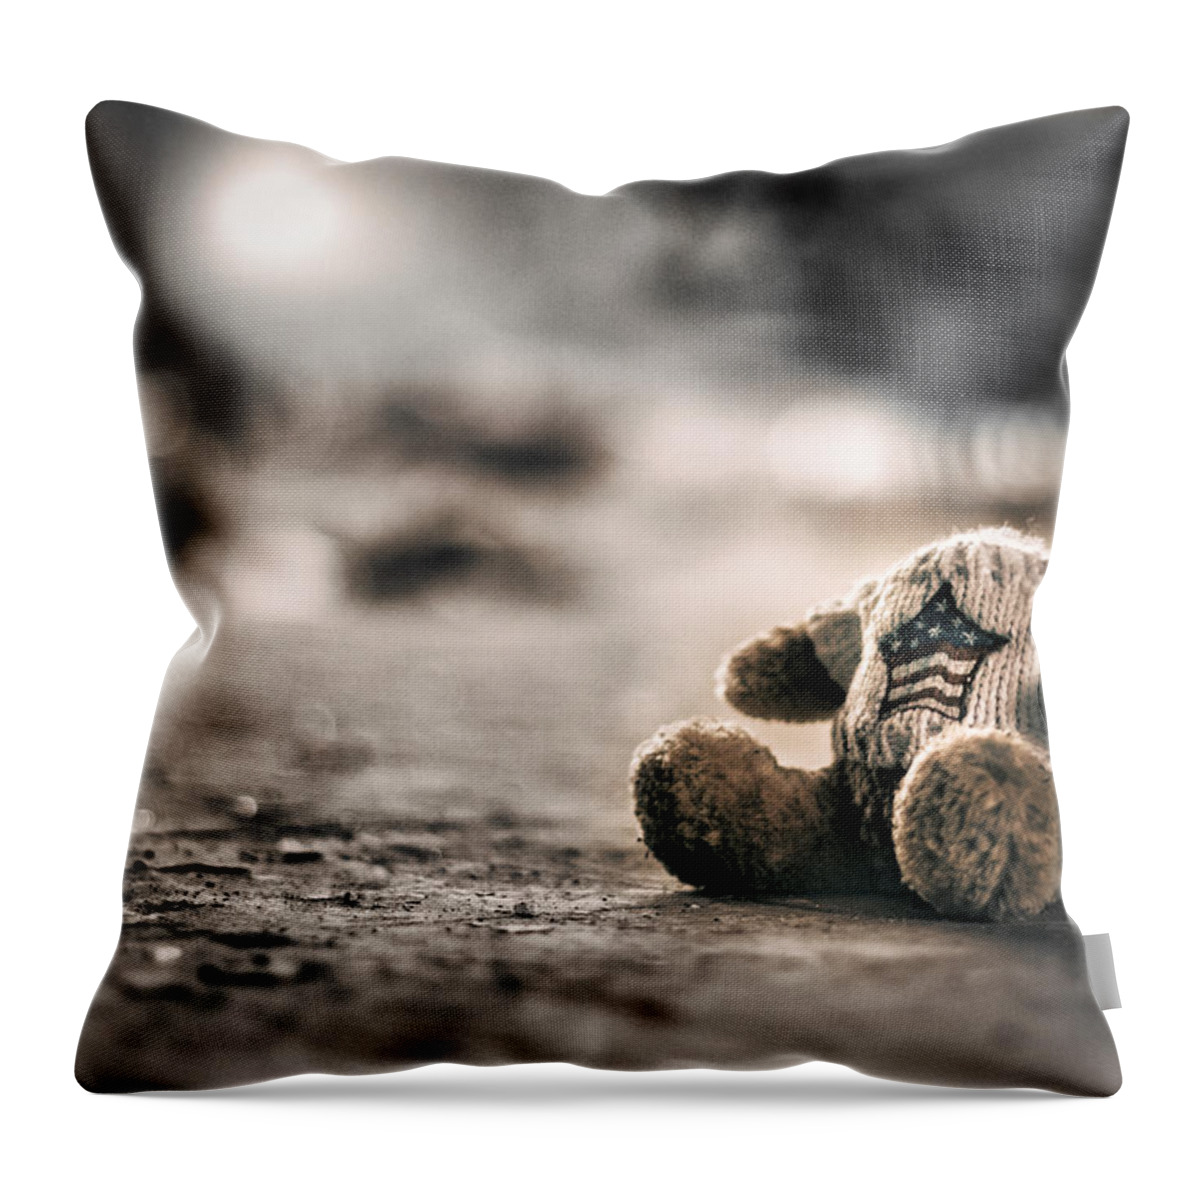 Bear Throw Pillow featuring the photograph Silent Games by Scott Wyatt